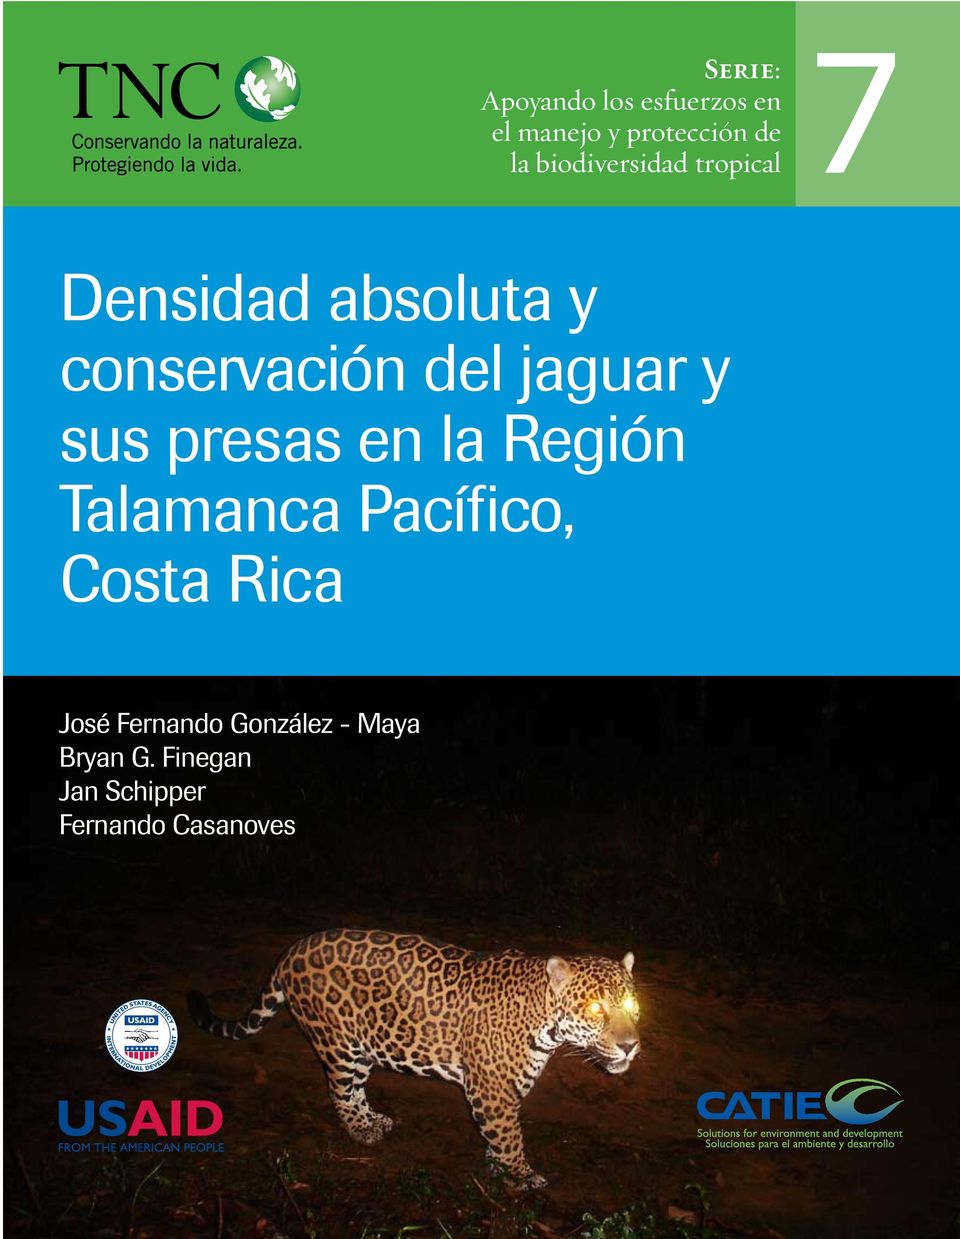 Densidad absoluta y conservación del jaguar y sus presas en la Región Talamanca